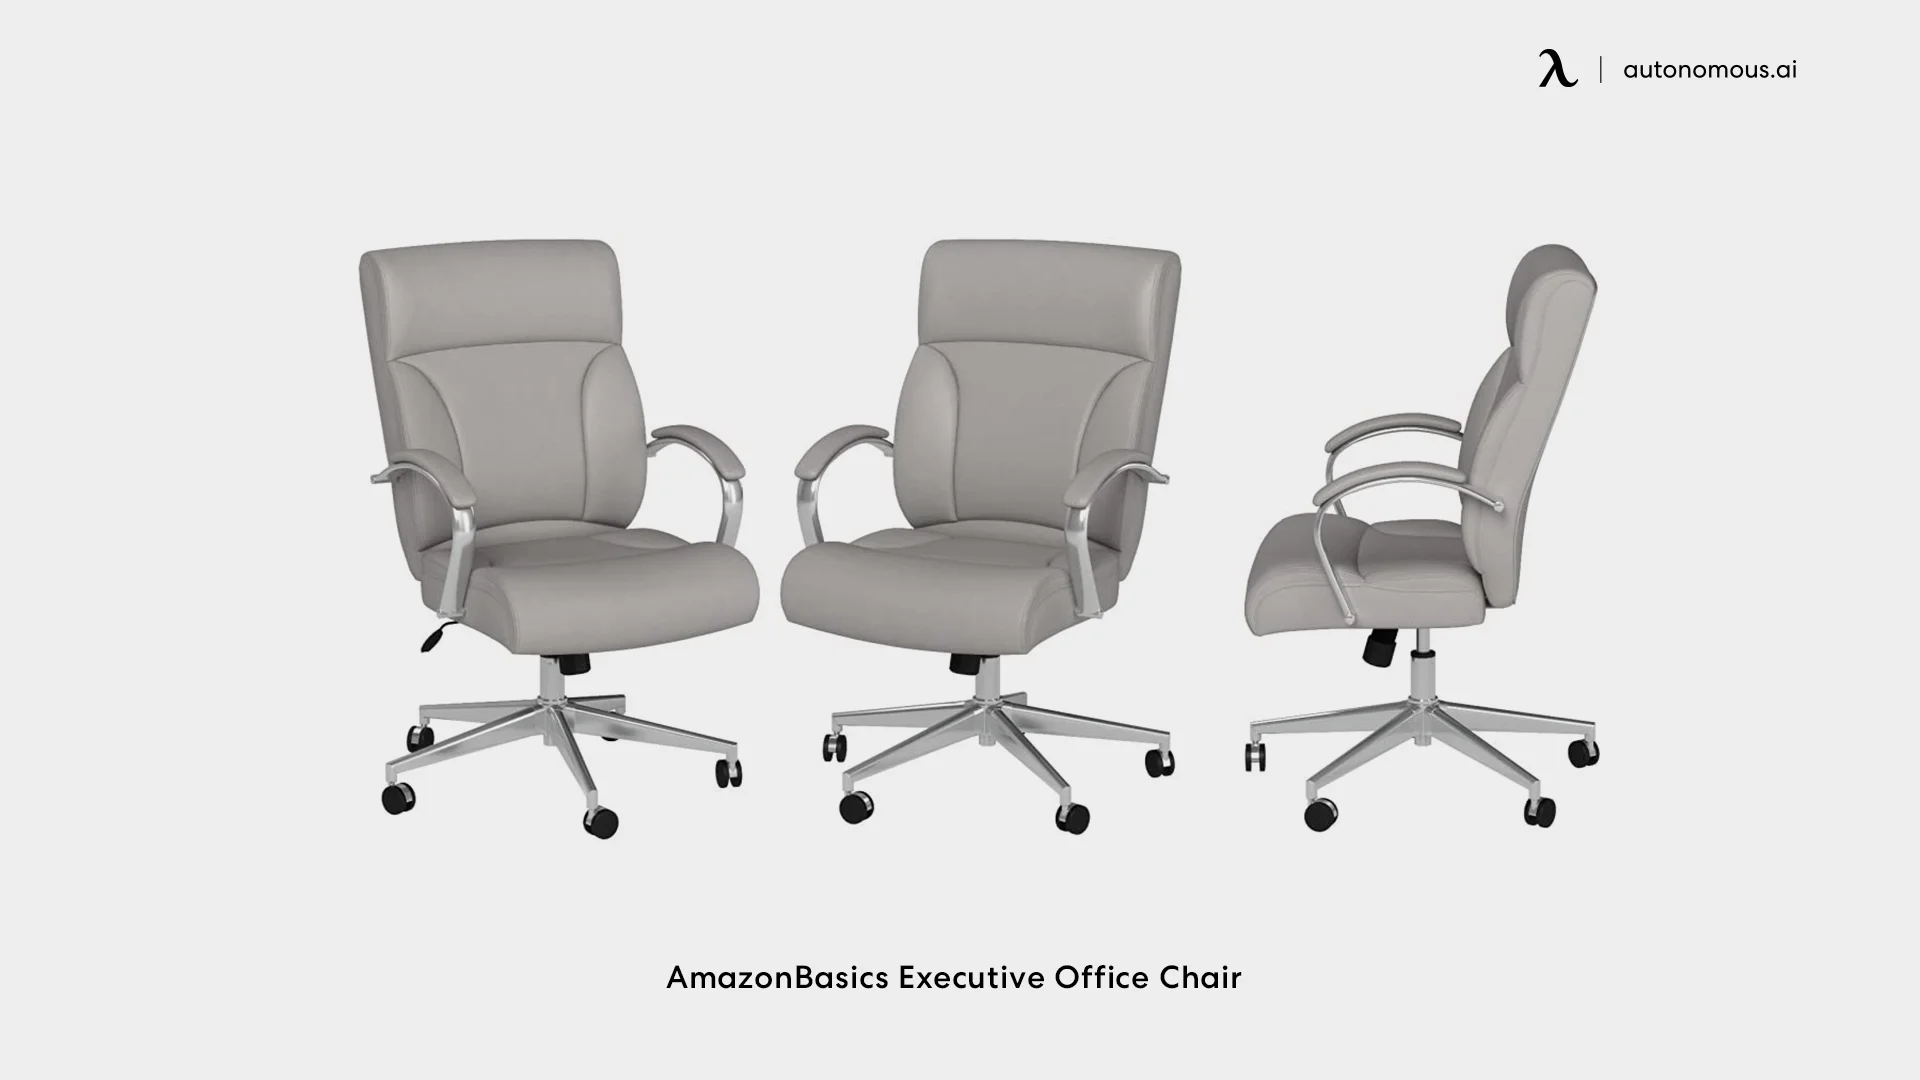 AmazonBasics Executive Office Chair